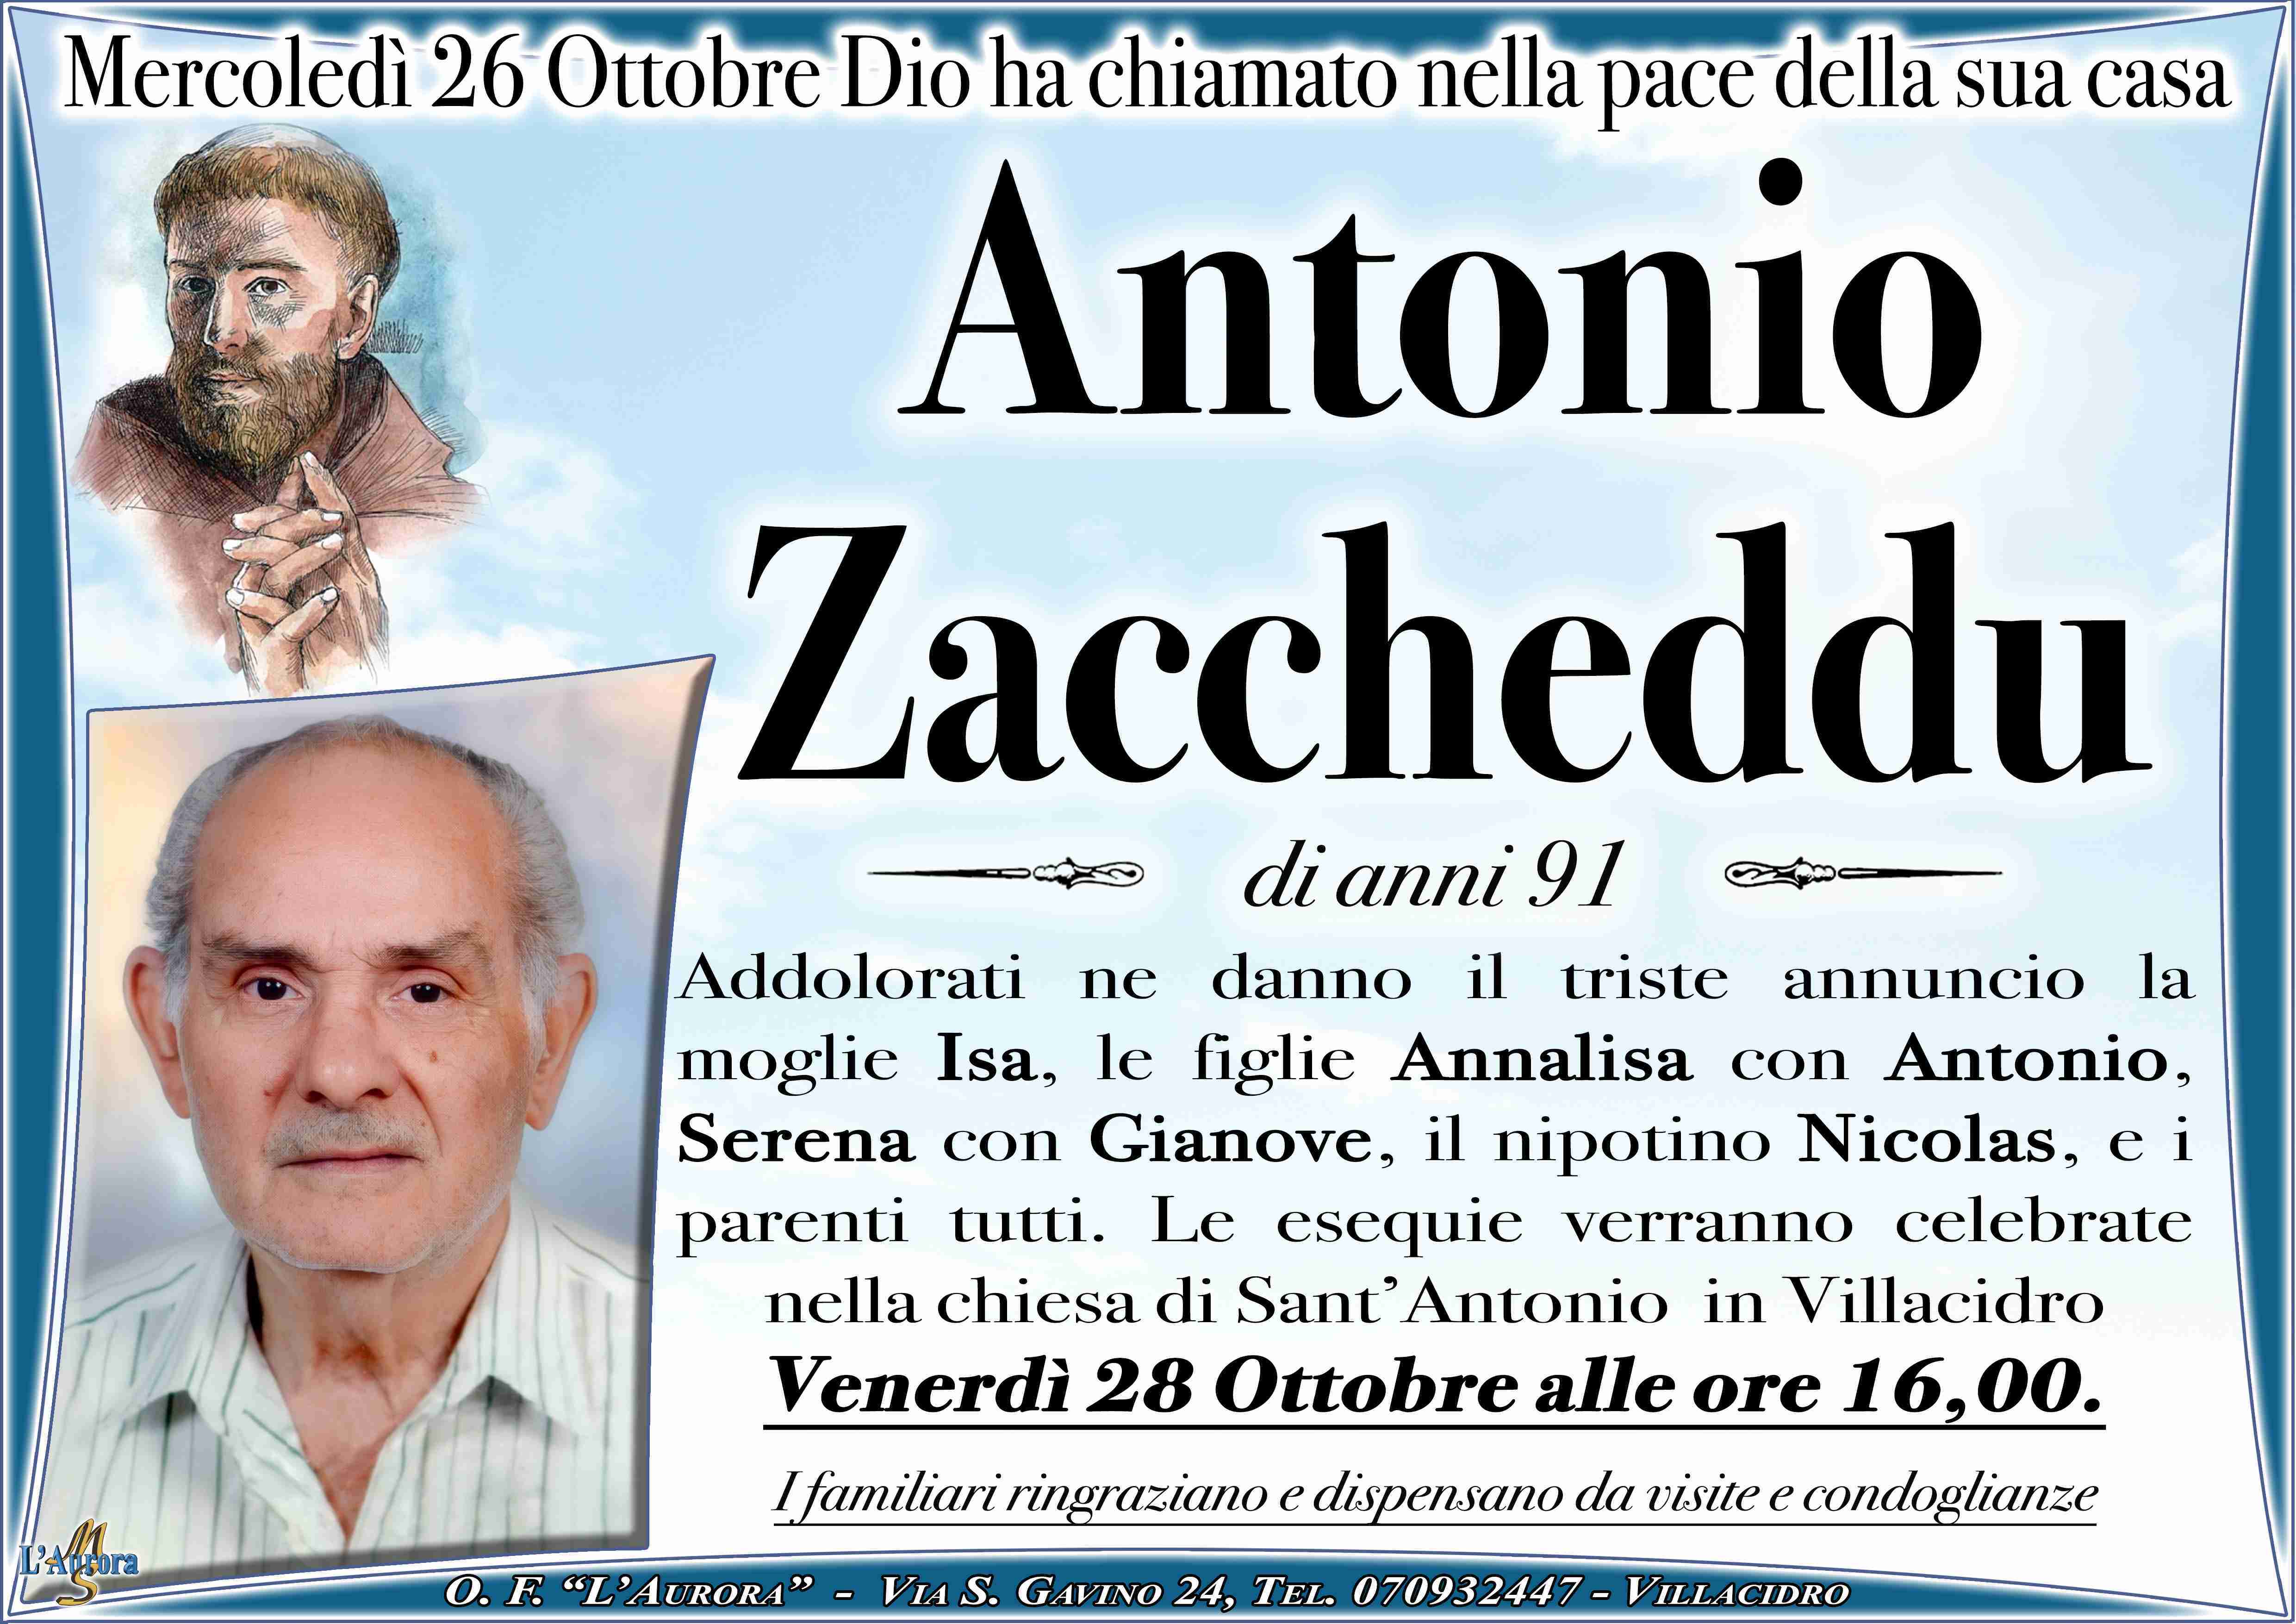 Antonio Zaccheddu